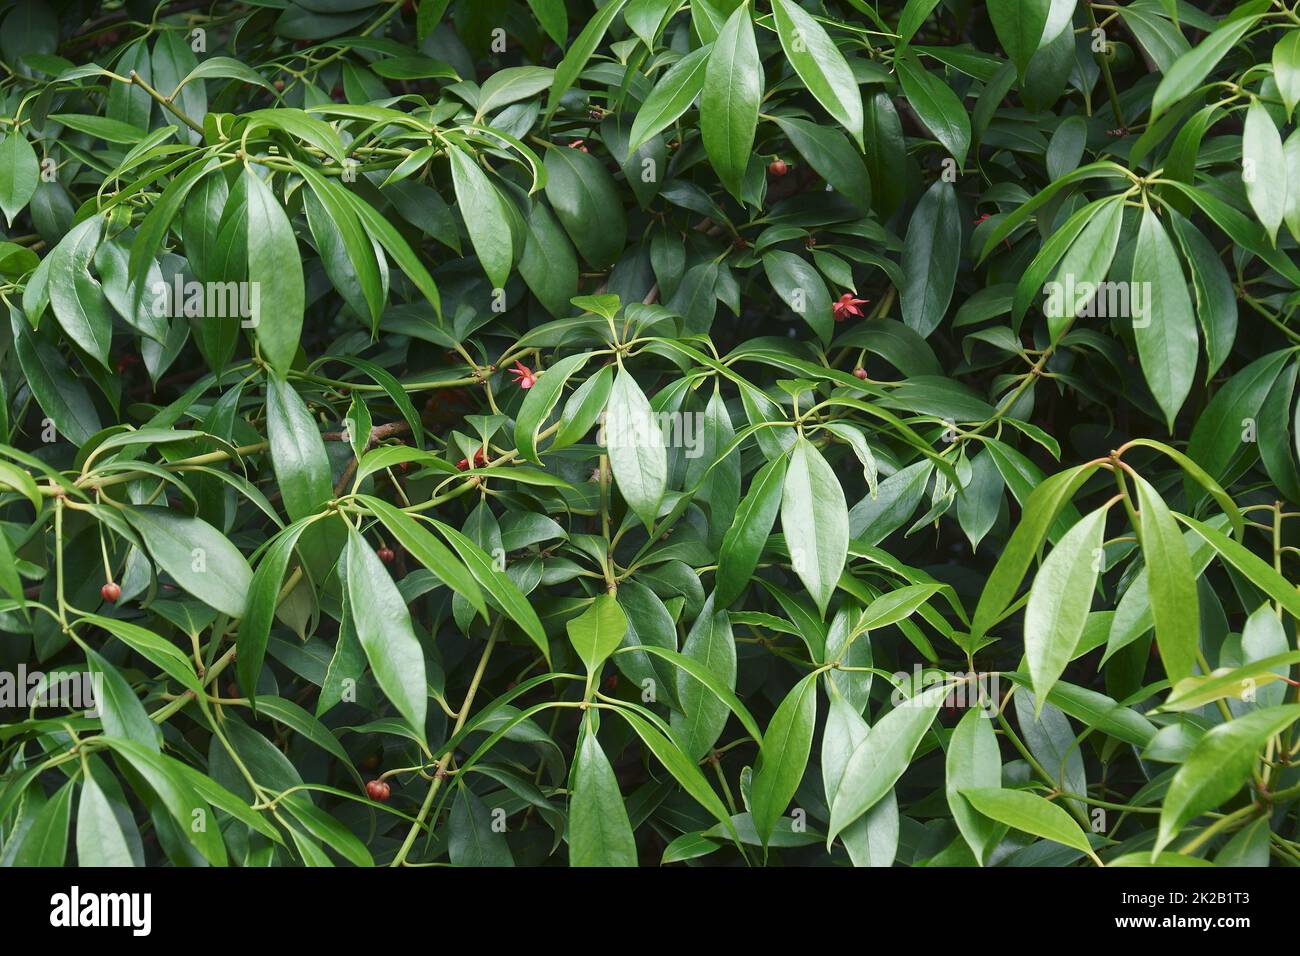 Close-up image of Chinese anise tree foliage. Stock Photo